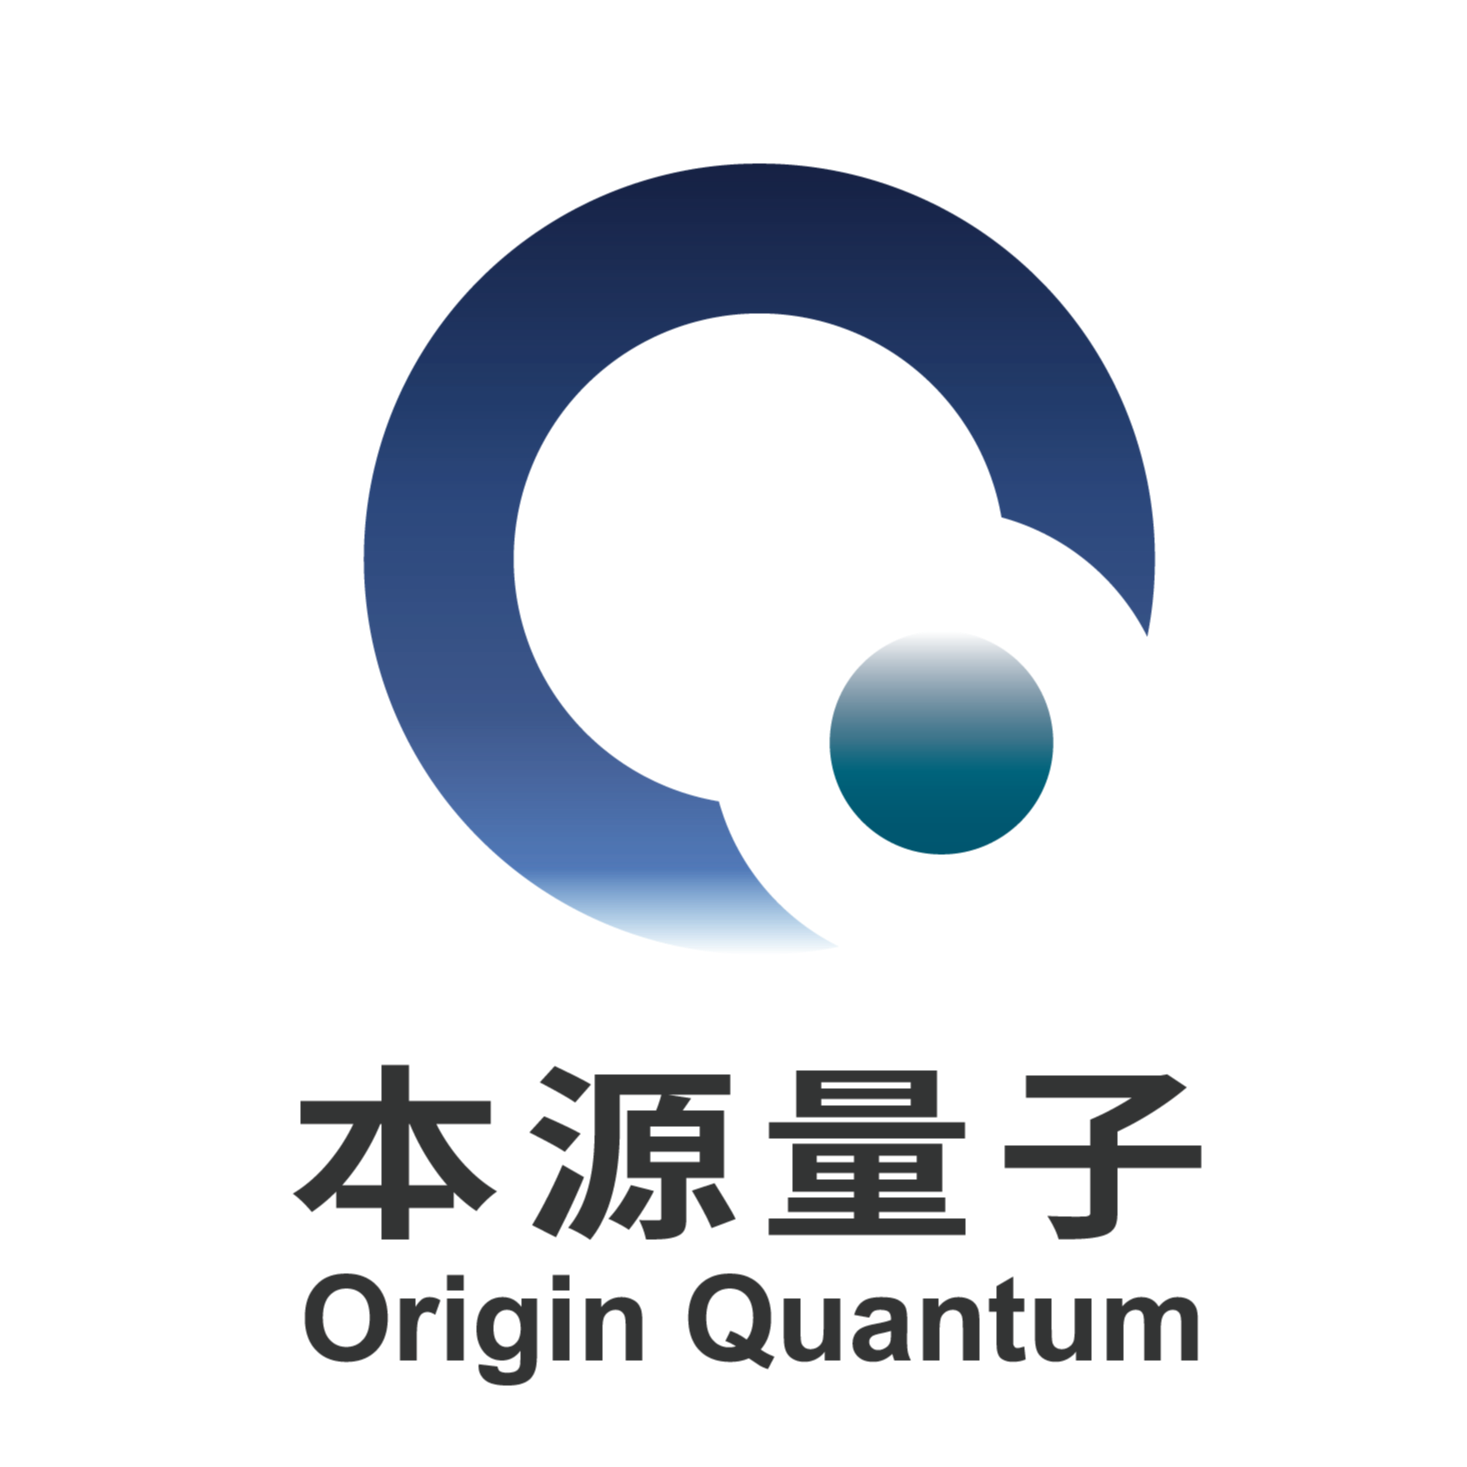 量子计算及其应用——龙湖大讲堂